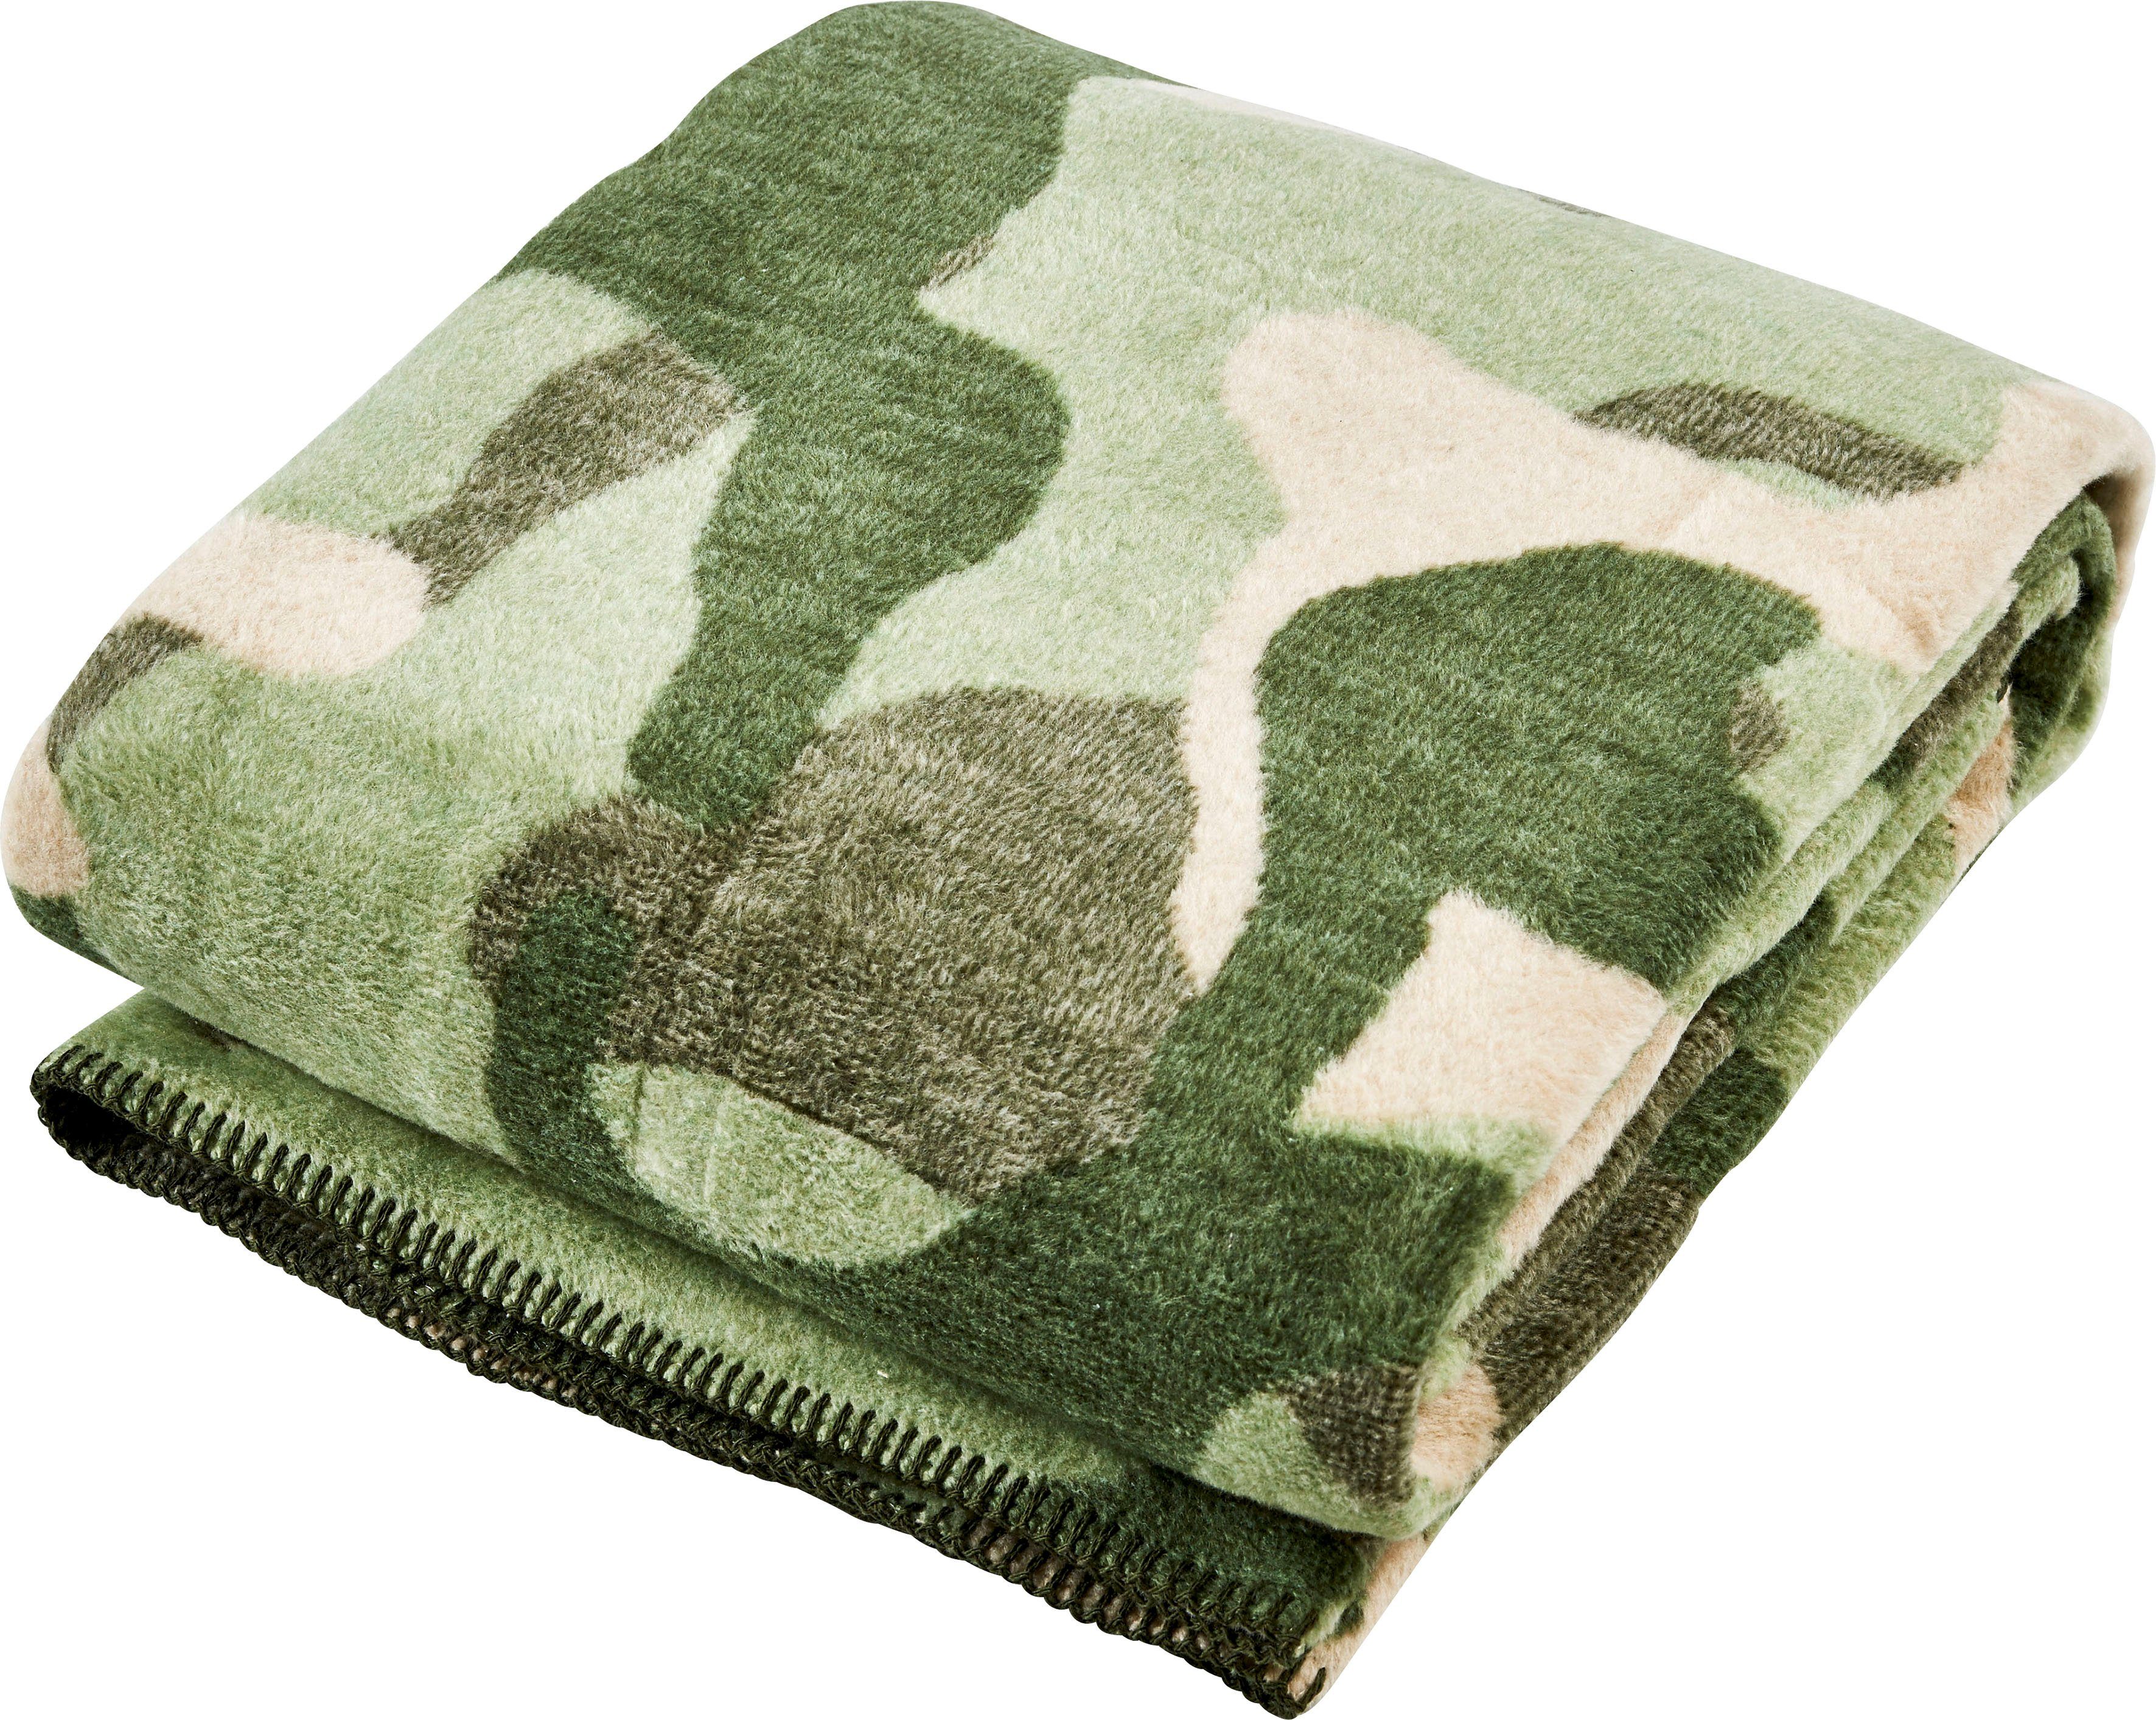 Wohndecke done.®, Camouflage, Ziernaht, mit Wohndecke einfassender Kuscheldecke khaki/grün/beige